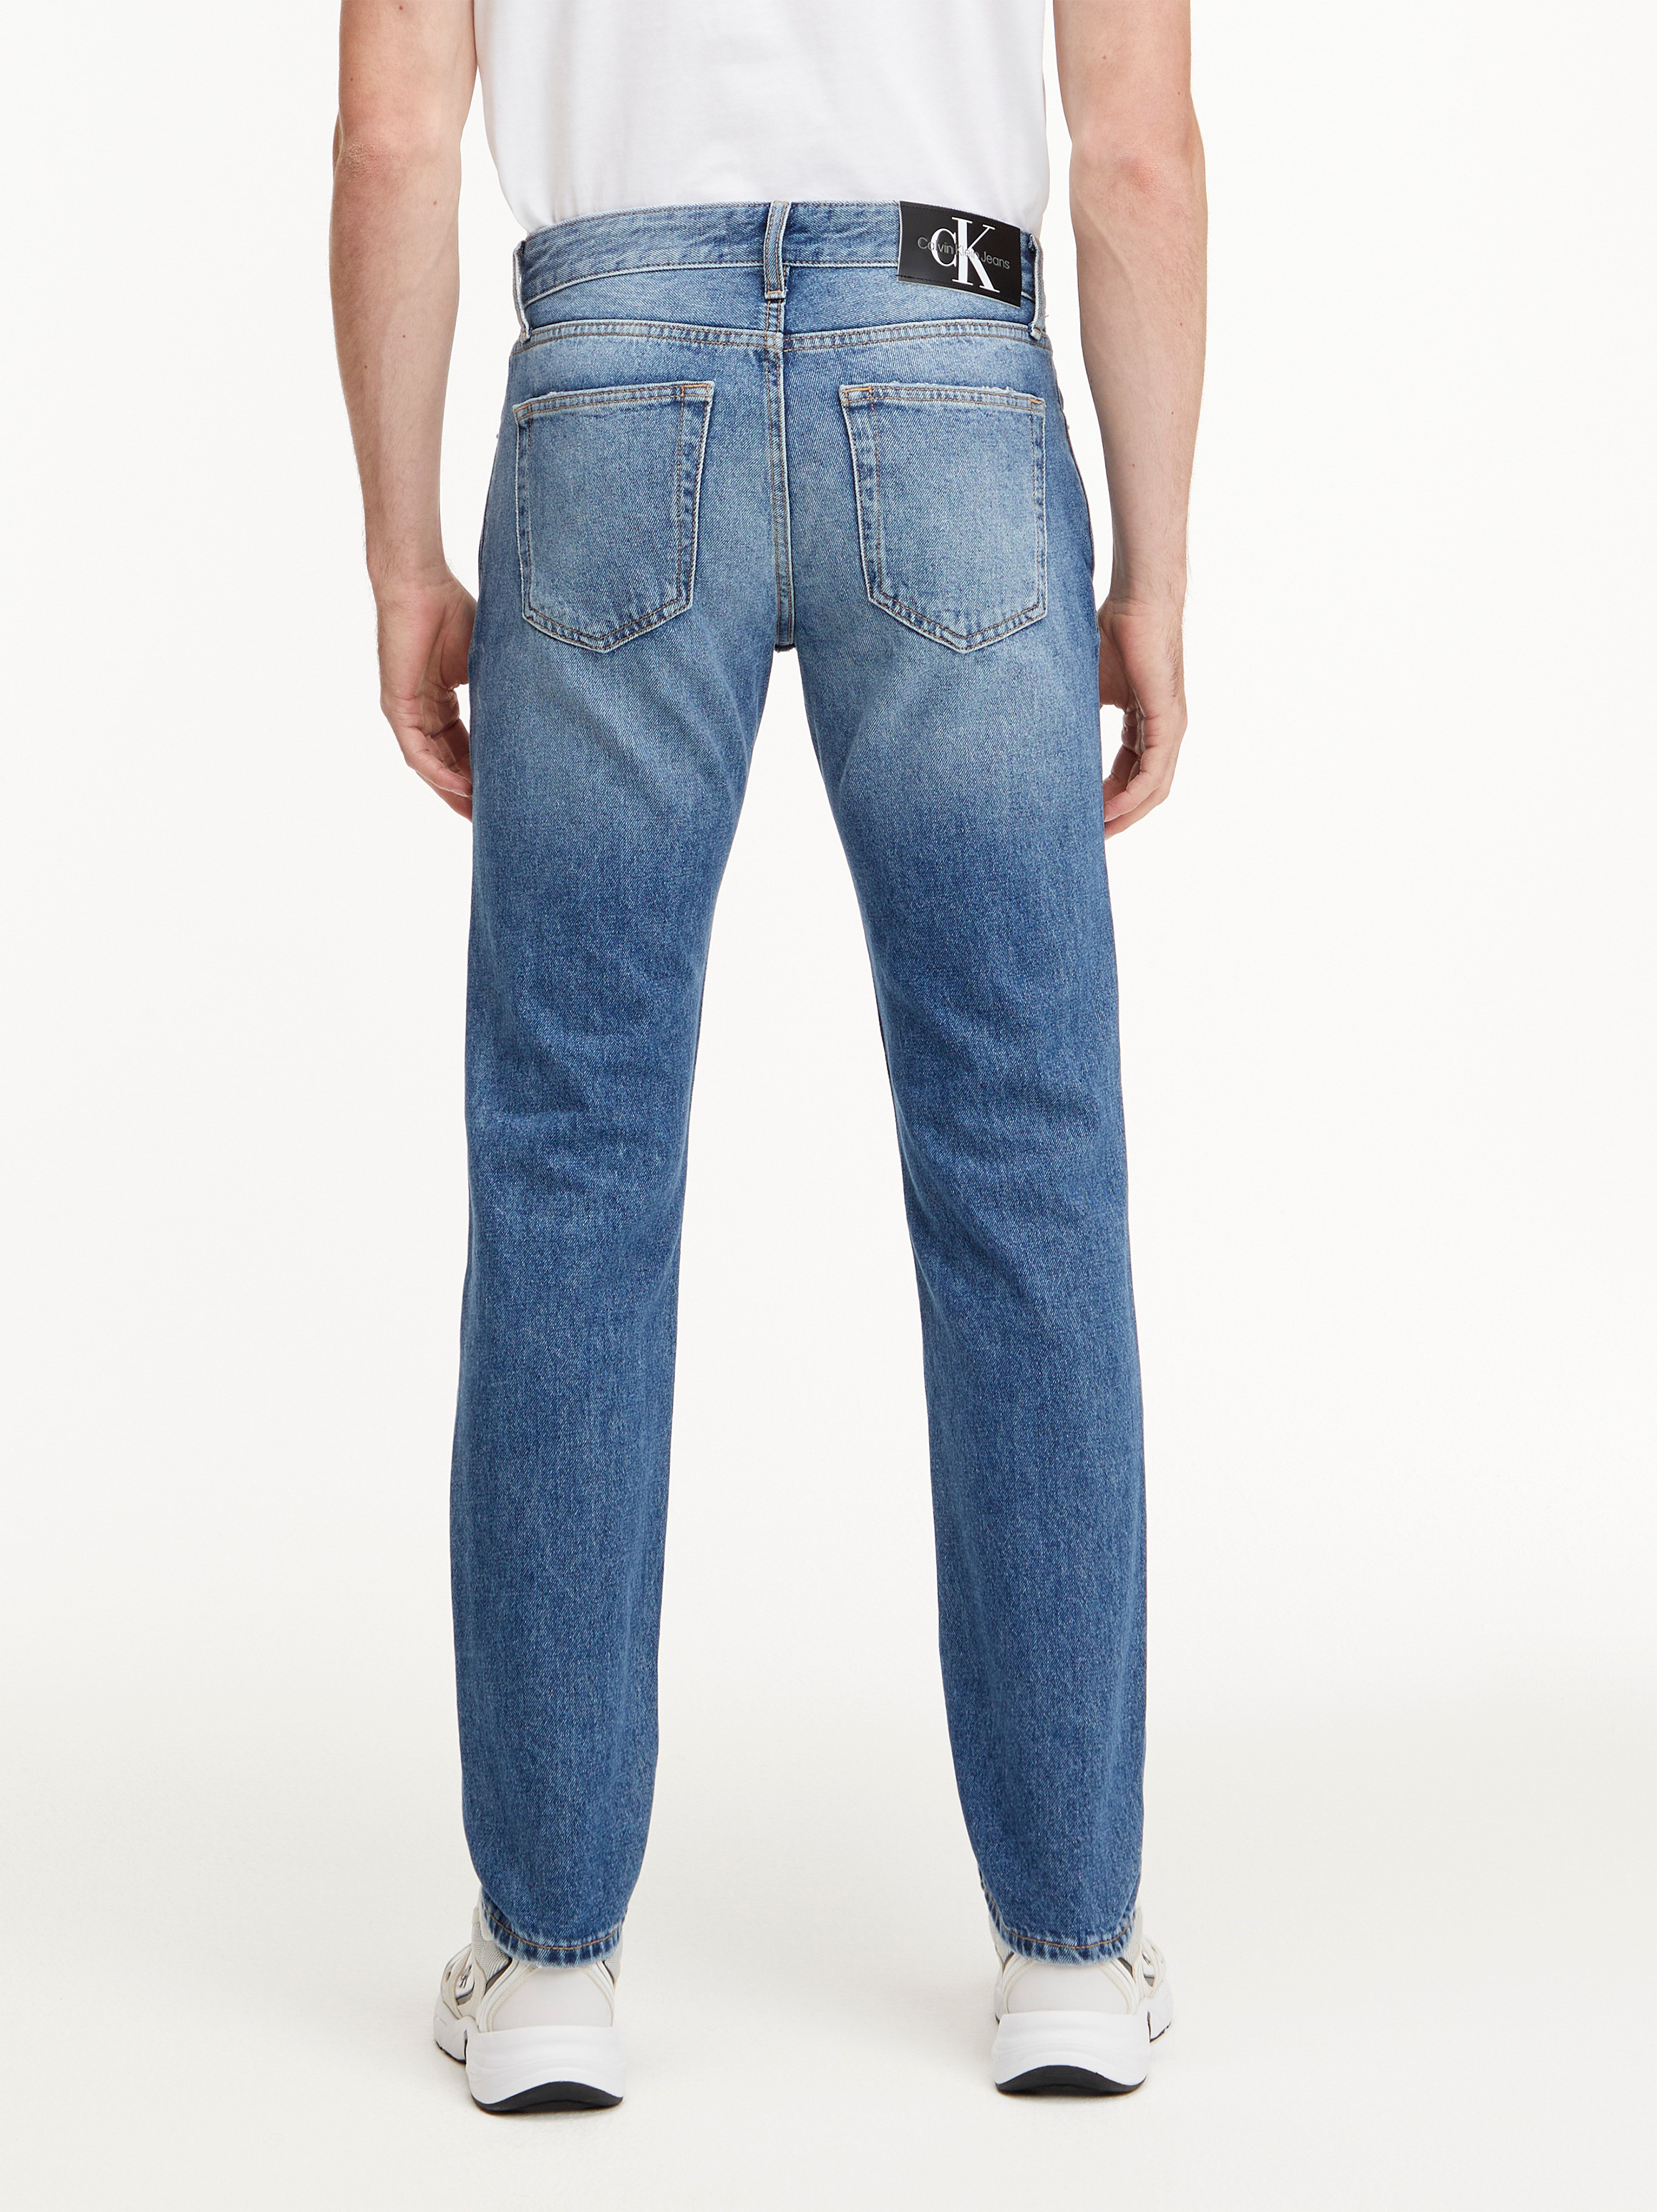 Calvin Klein Jeans -Straight leg five-pocket jeans, Denim, large image number 3